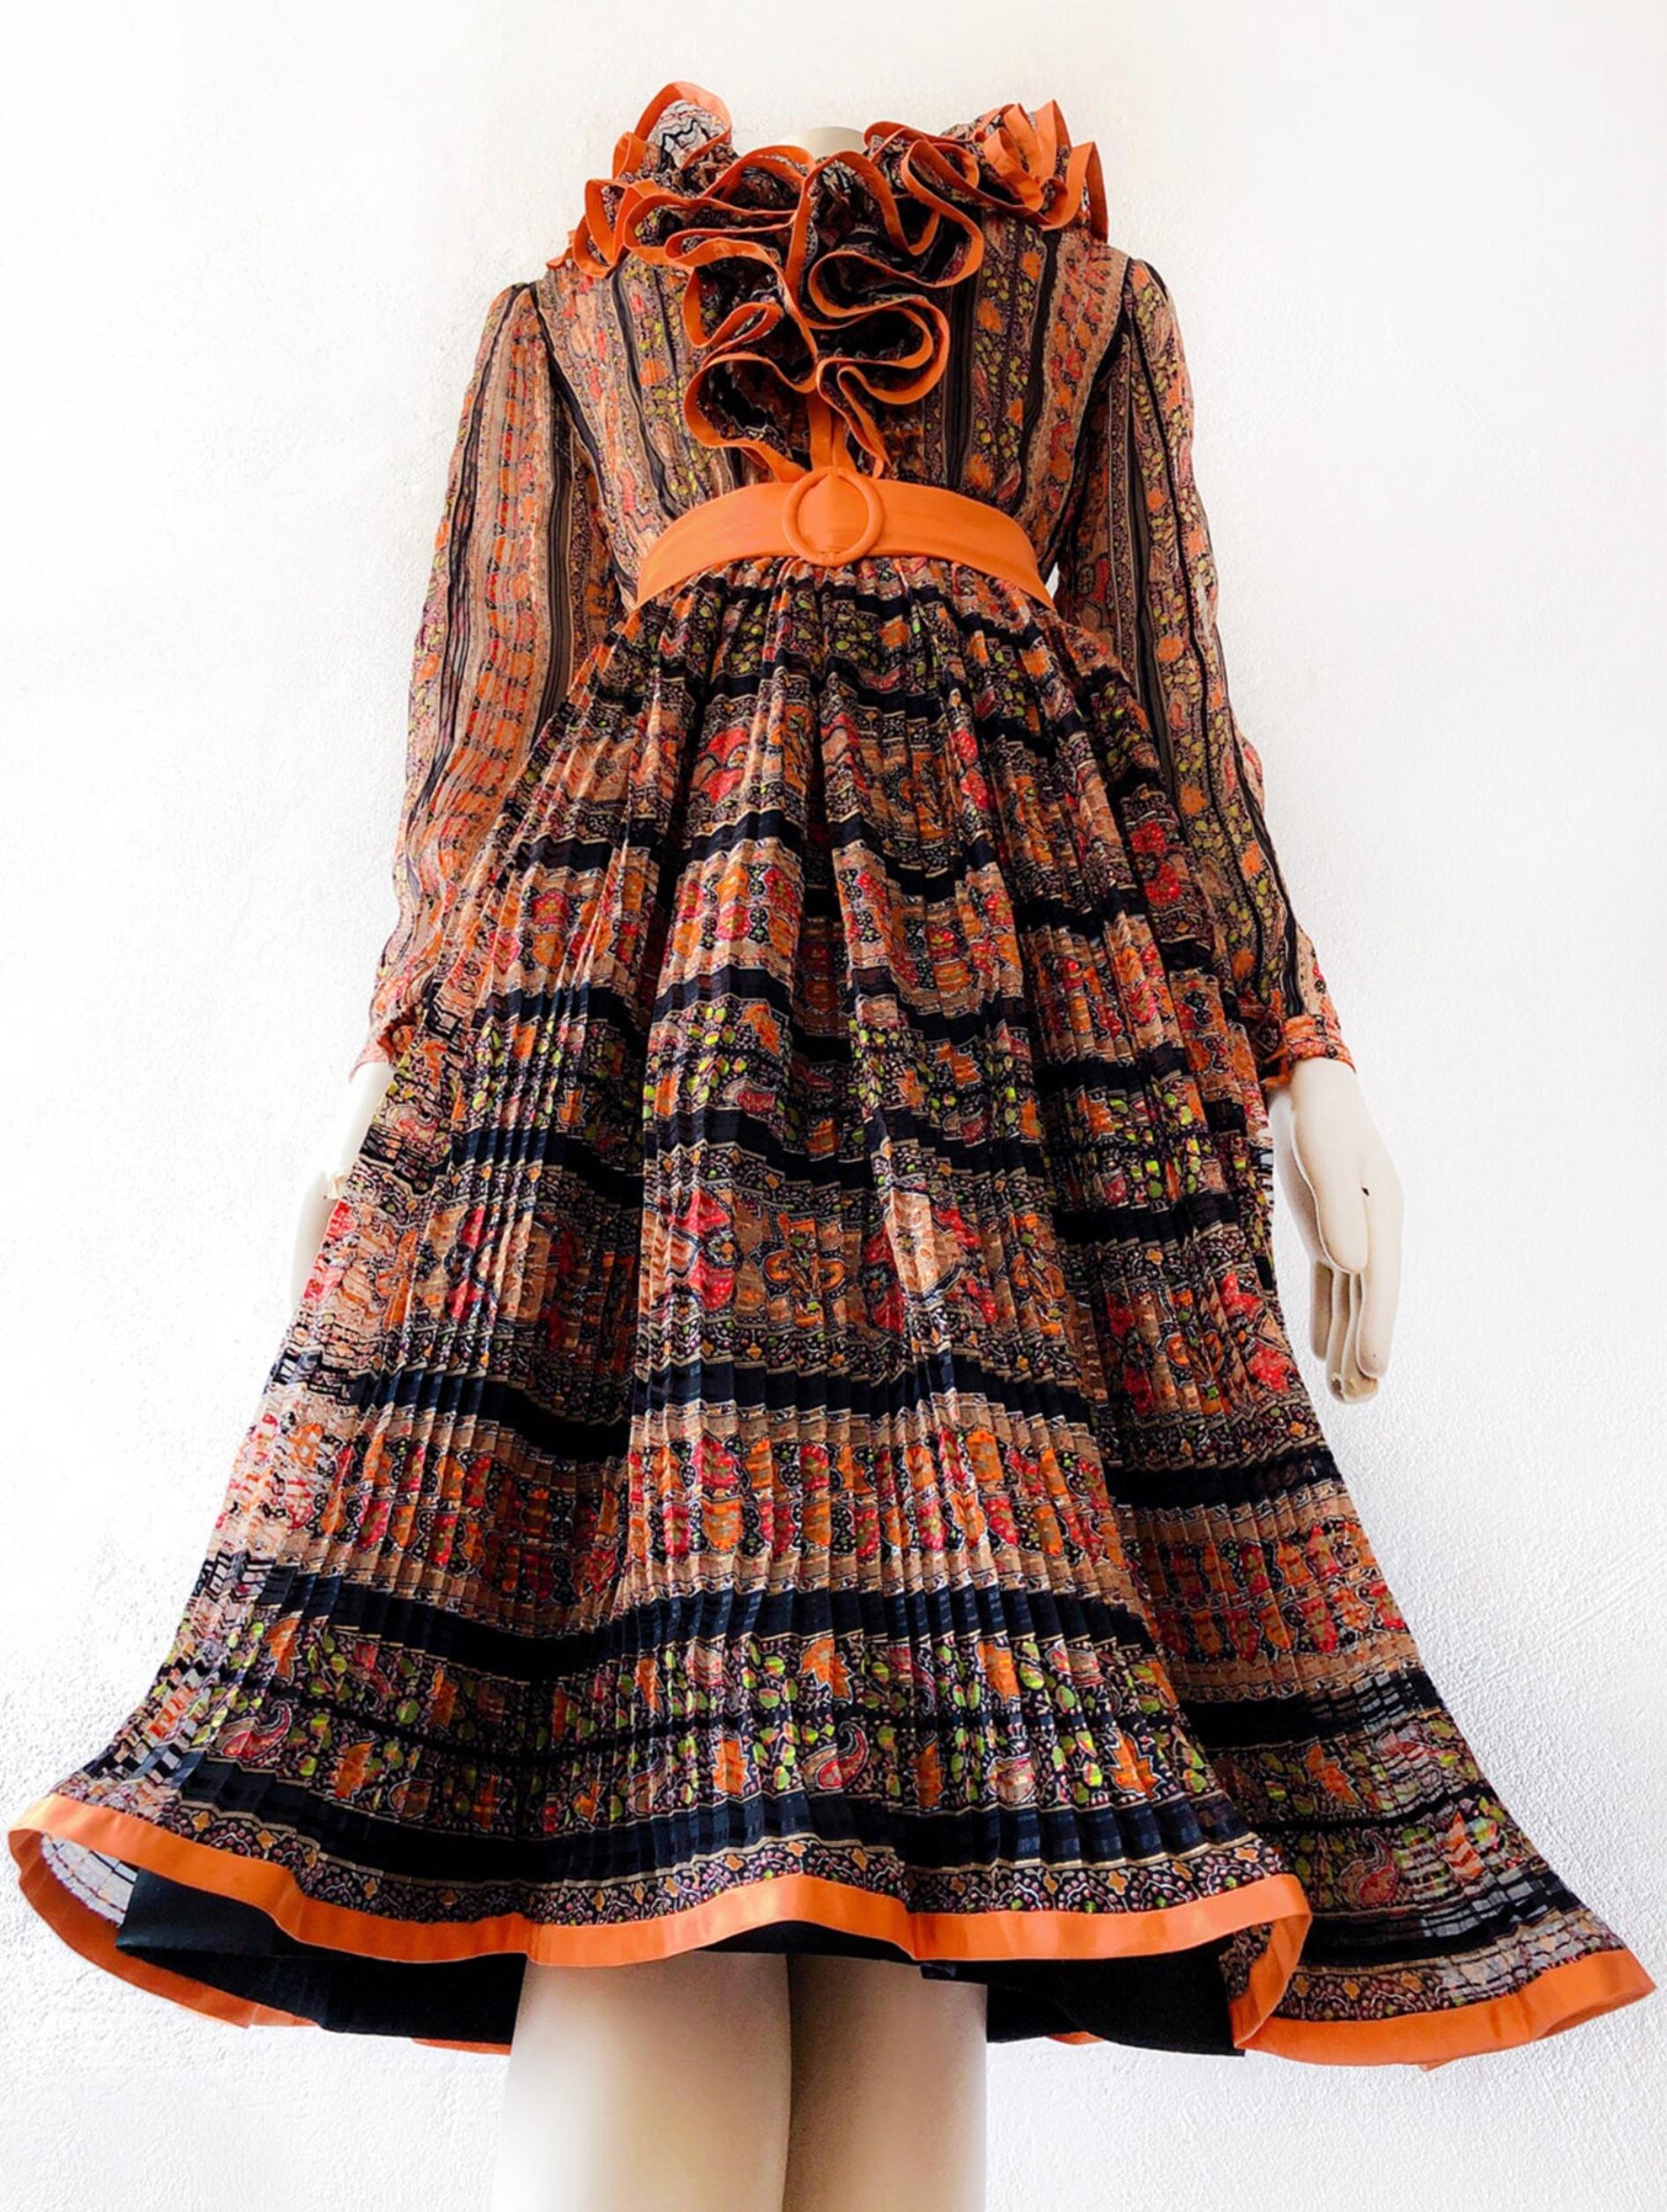 Das ist ein wunderschönes Kleid!
Es ist aus einem wunderschönen zarten Seidenstoff und schönen, kräftigen, gesättigten Farben gefertigt, die Form ist typisch für die 1970er Jahre.  Die Konstruktion ist so gut gemacht und es gibt so viele schöne